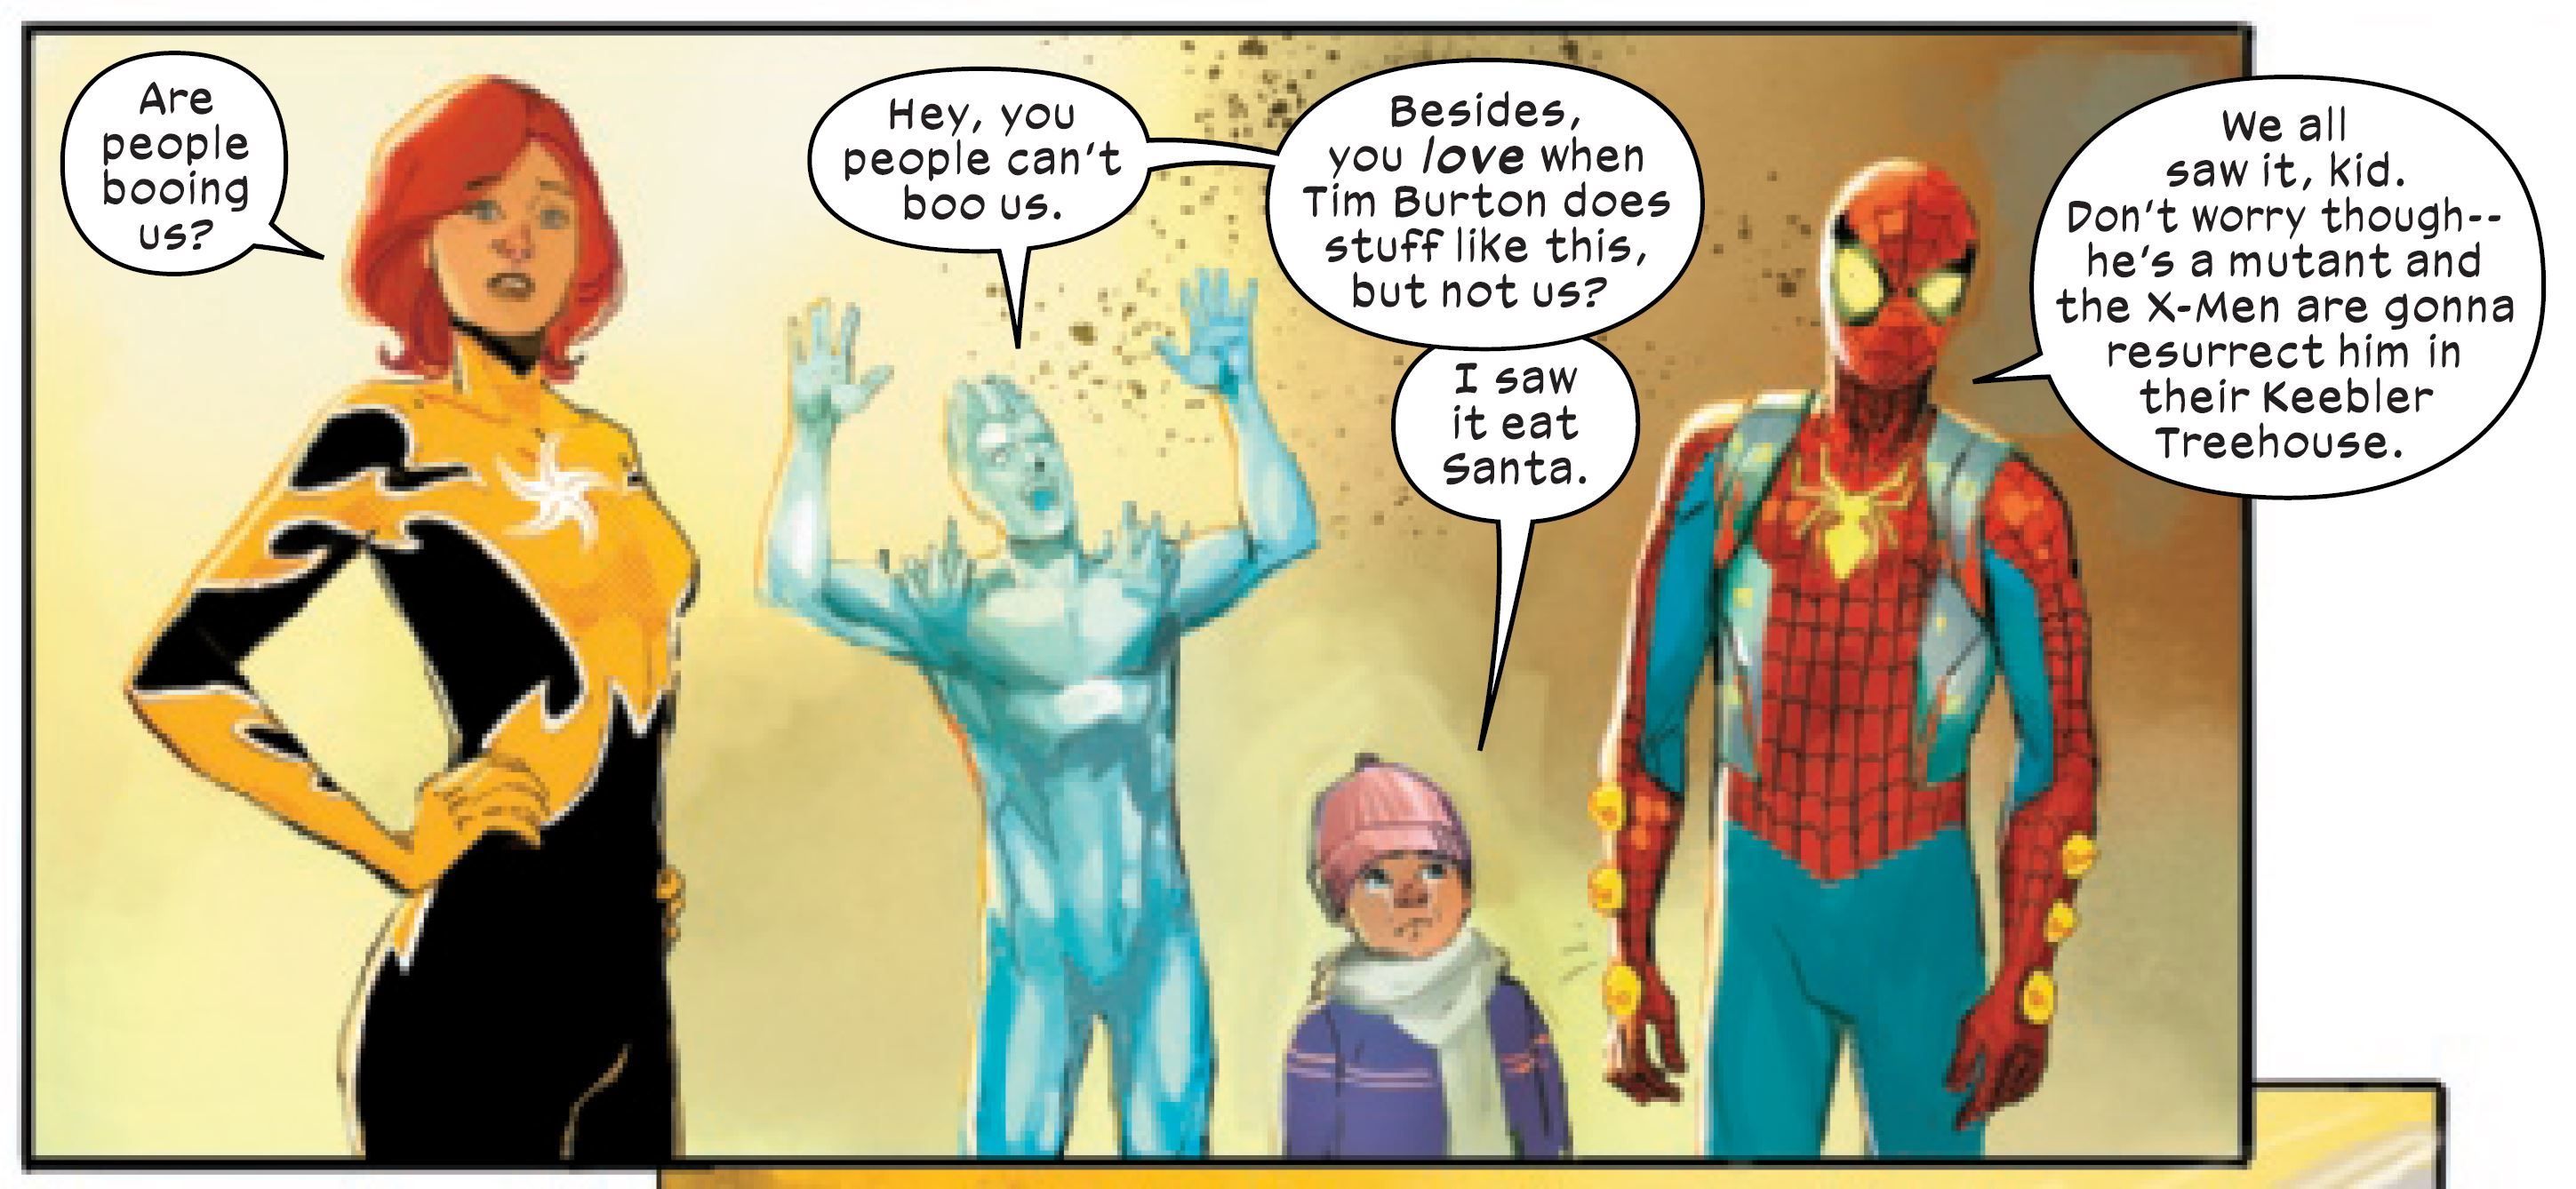 dark-web-x-men-1-spider-man-says-santa-claus-is-mutant